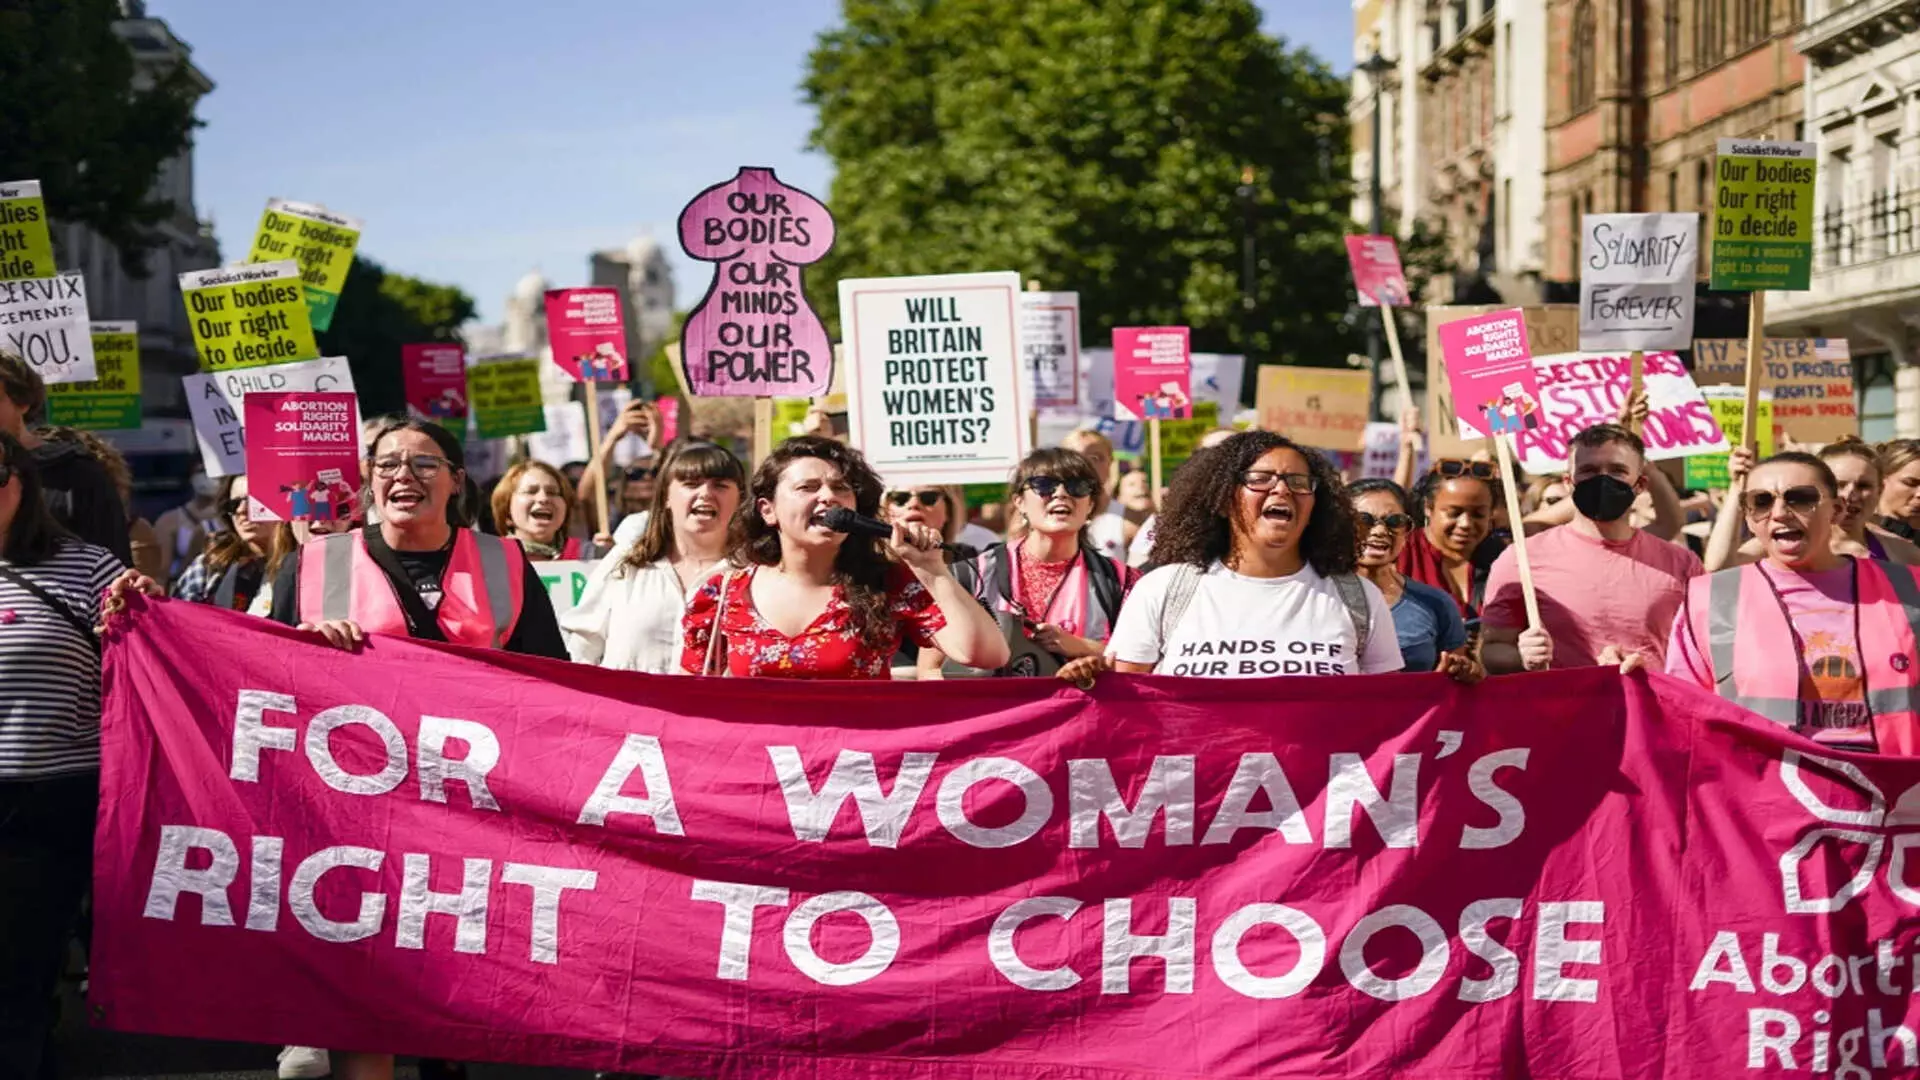 यूरोप में गर्भपात तक पहुंच के लिए अभियान शुरू